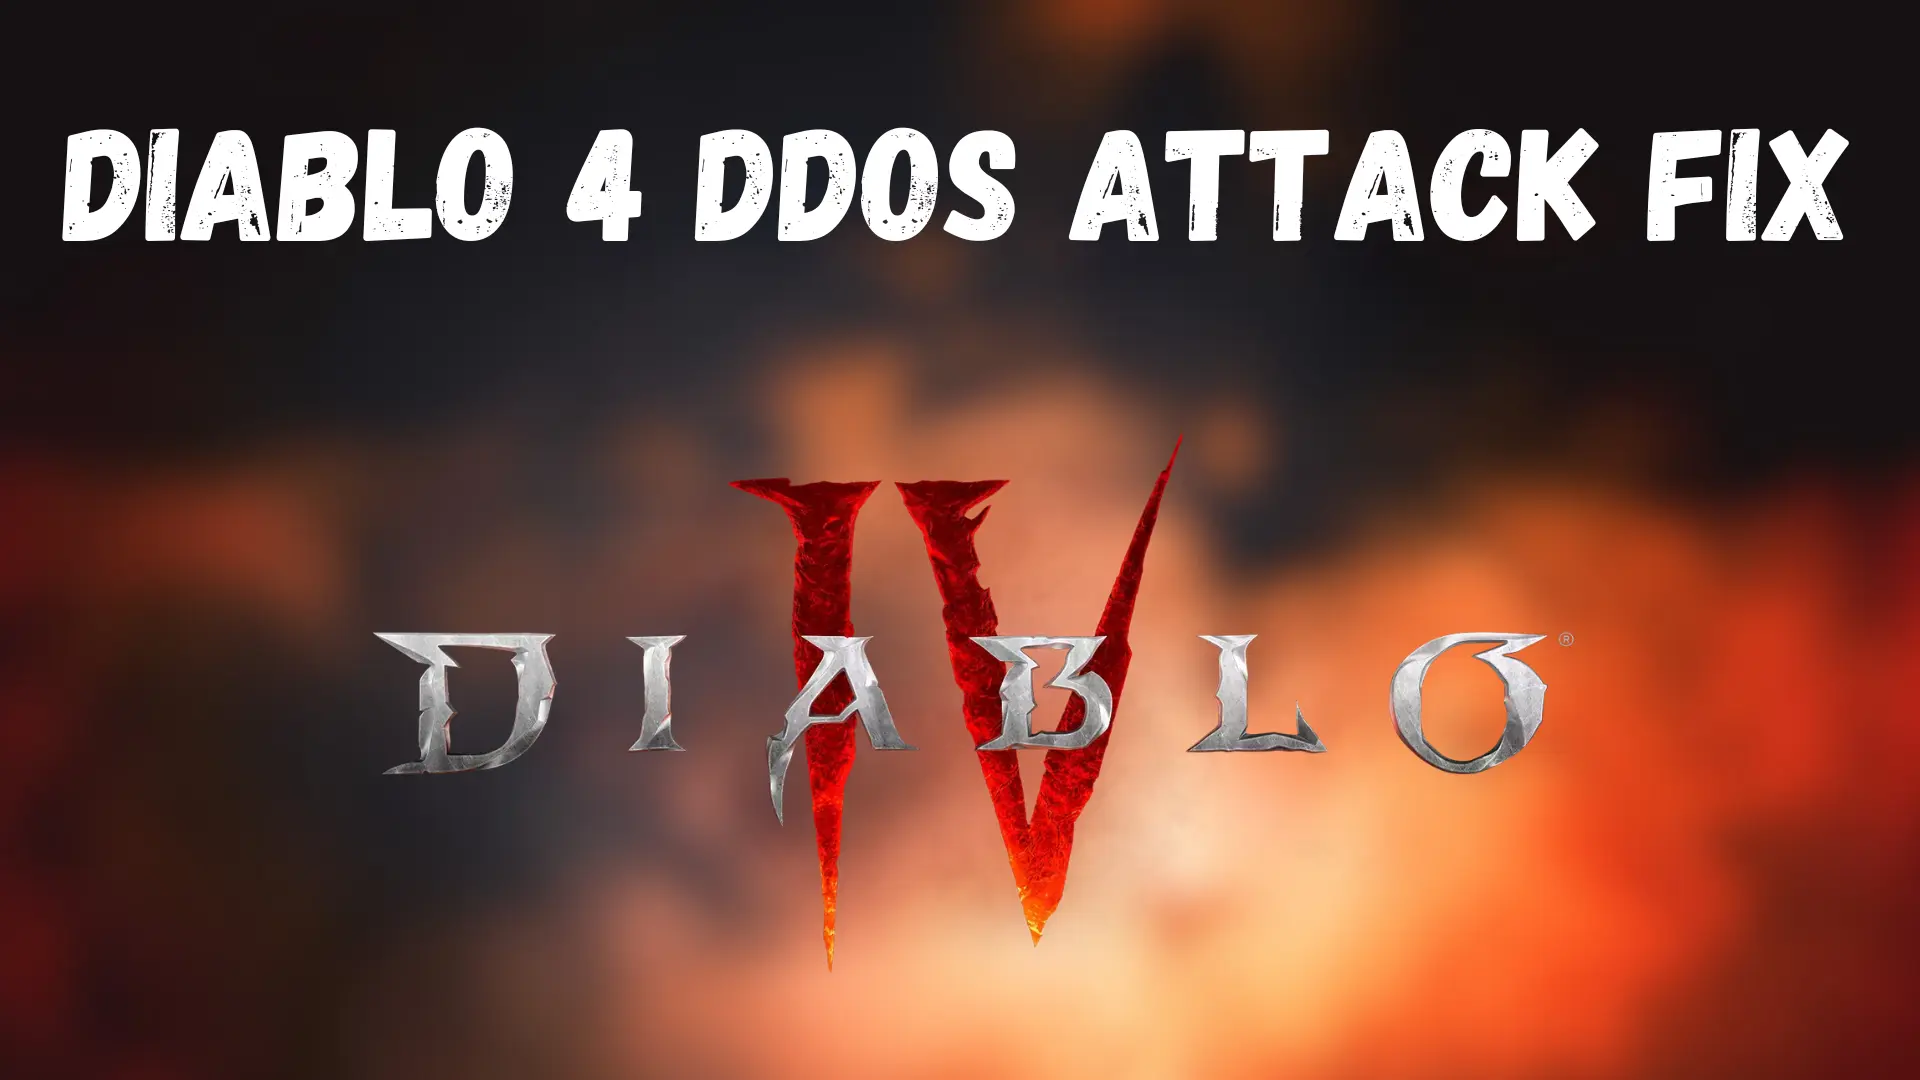 Diablo 4 DDoS Attack Fix